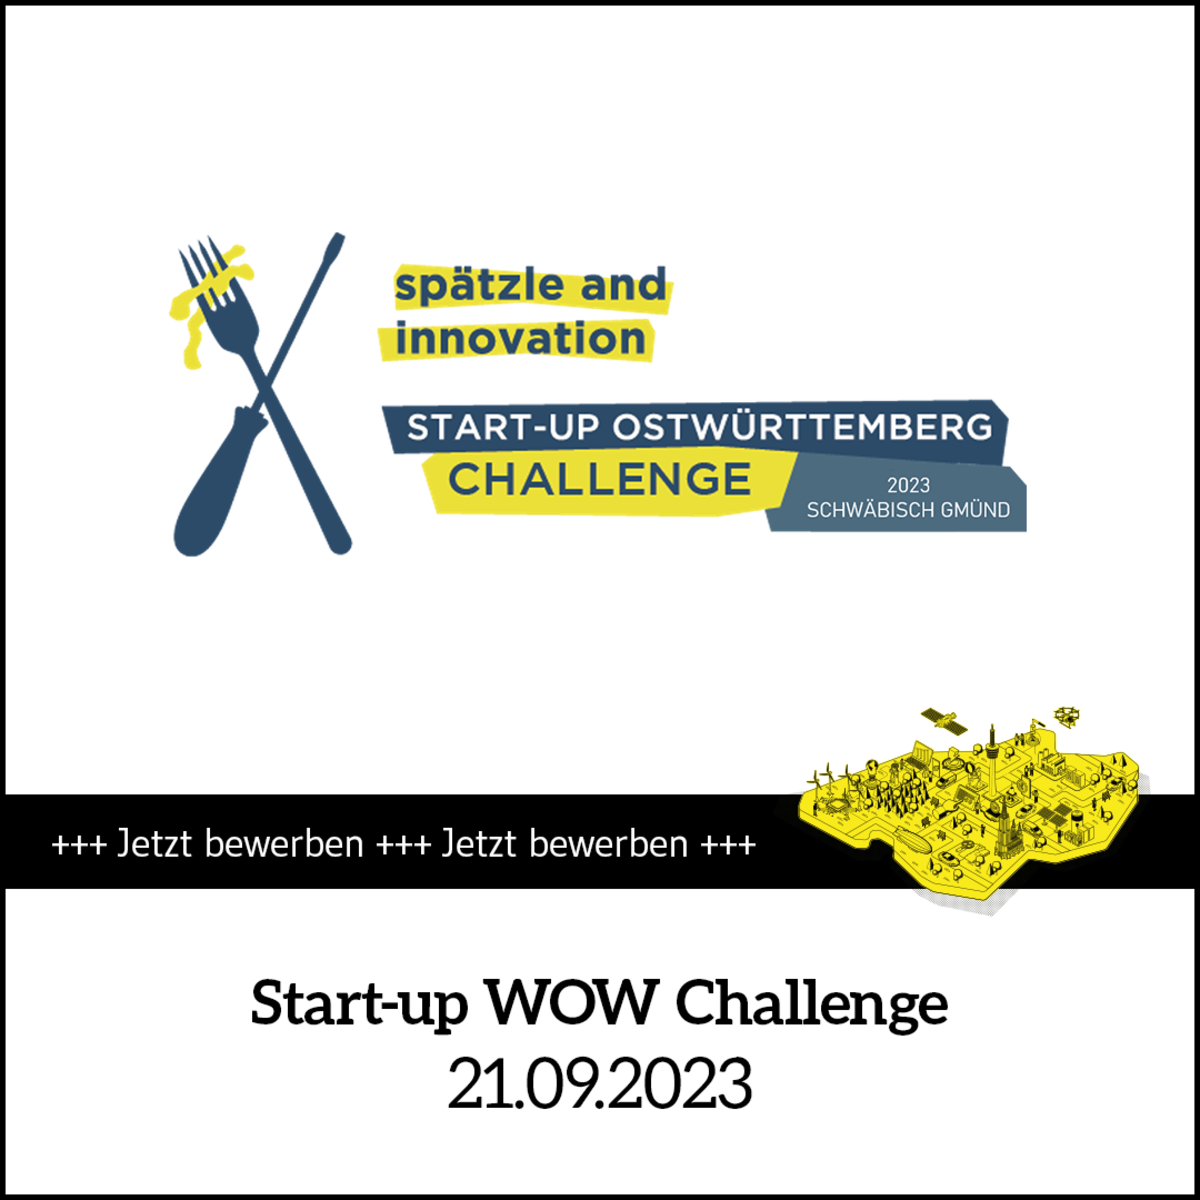 Termin-Kachel Start-up WOW Challenge 2023 als Vorentscheid für den Start-up BW Elevator Pitch. Text: Jetzt bewerben. 21.09.2023.